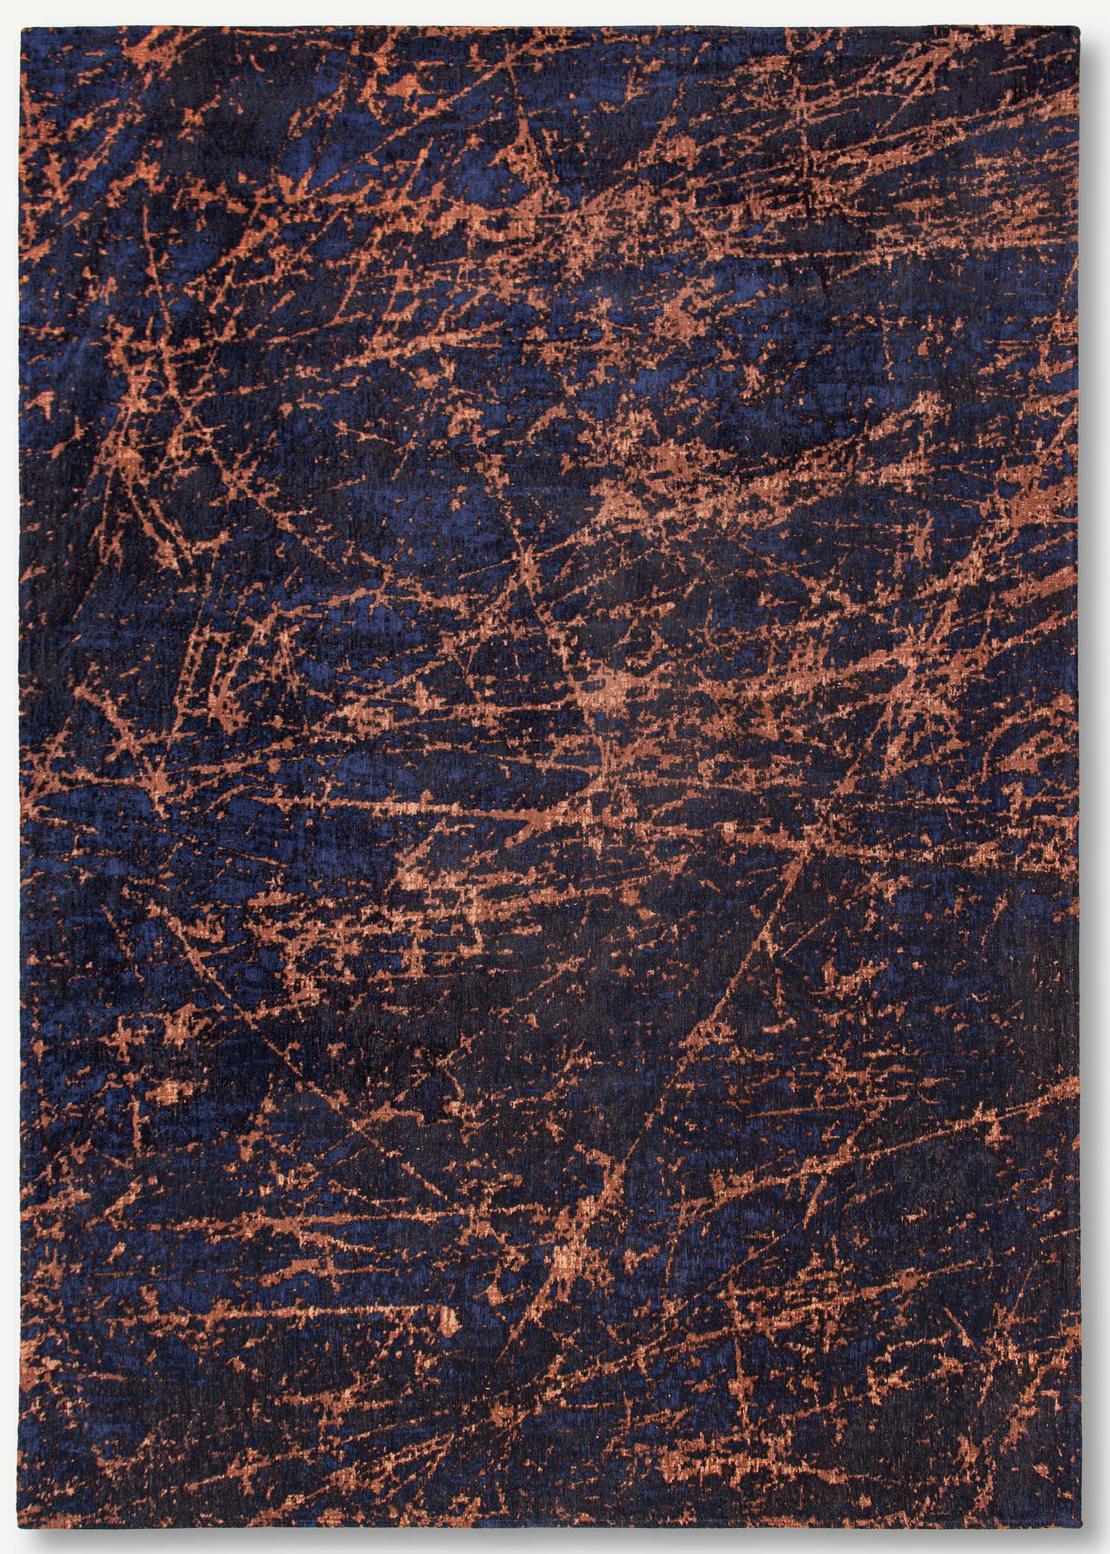 Art Black & Orange Belgian Rug ☞ Size: 2' 7" x 5' (80 x 150 cm)